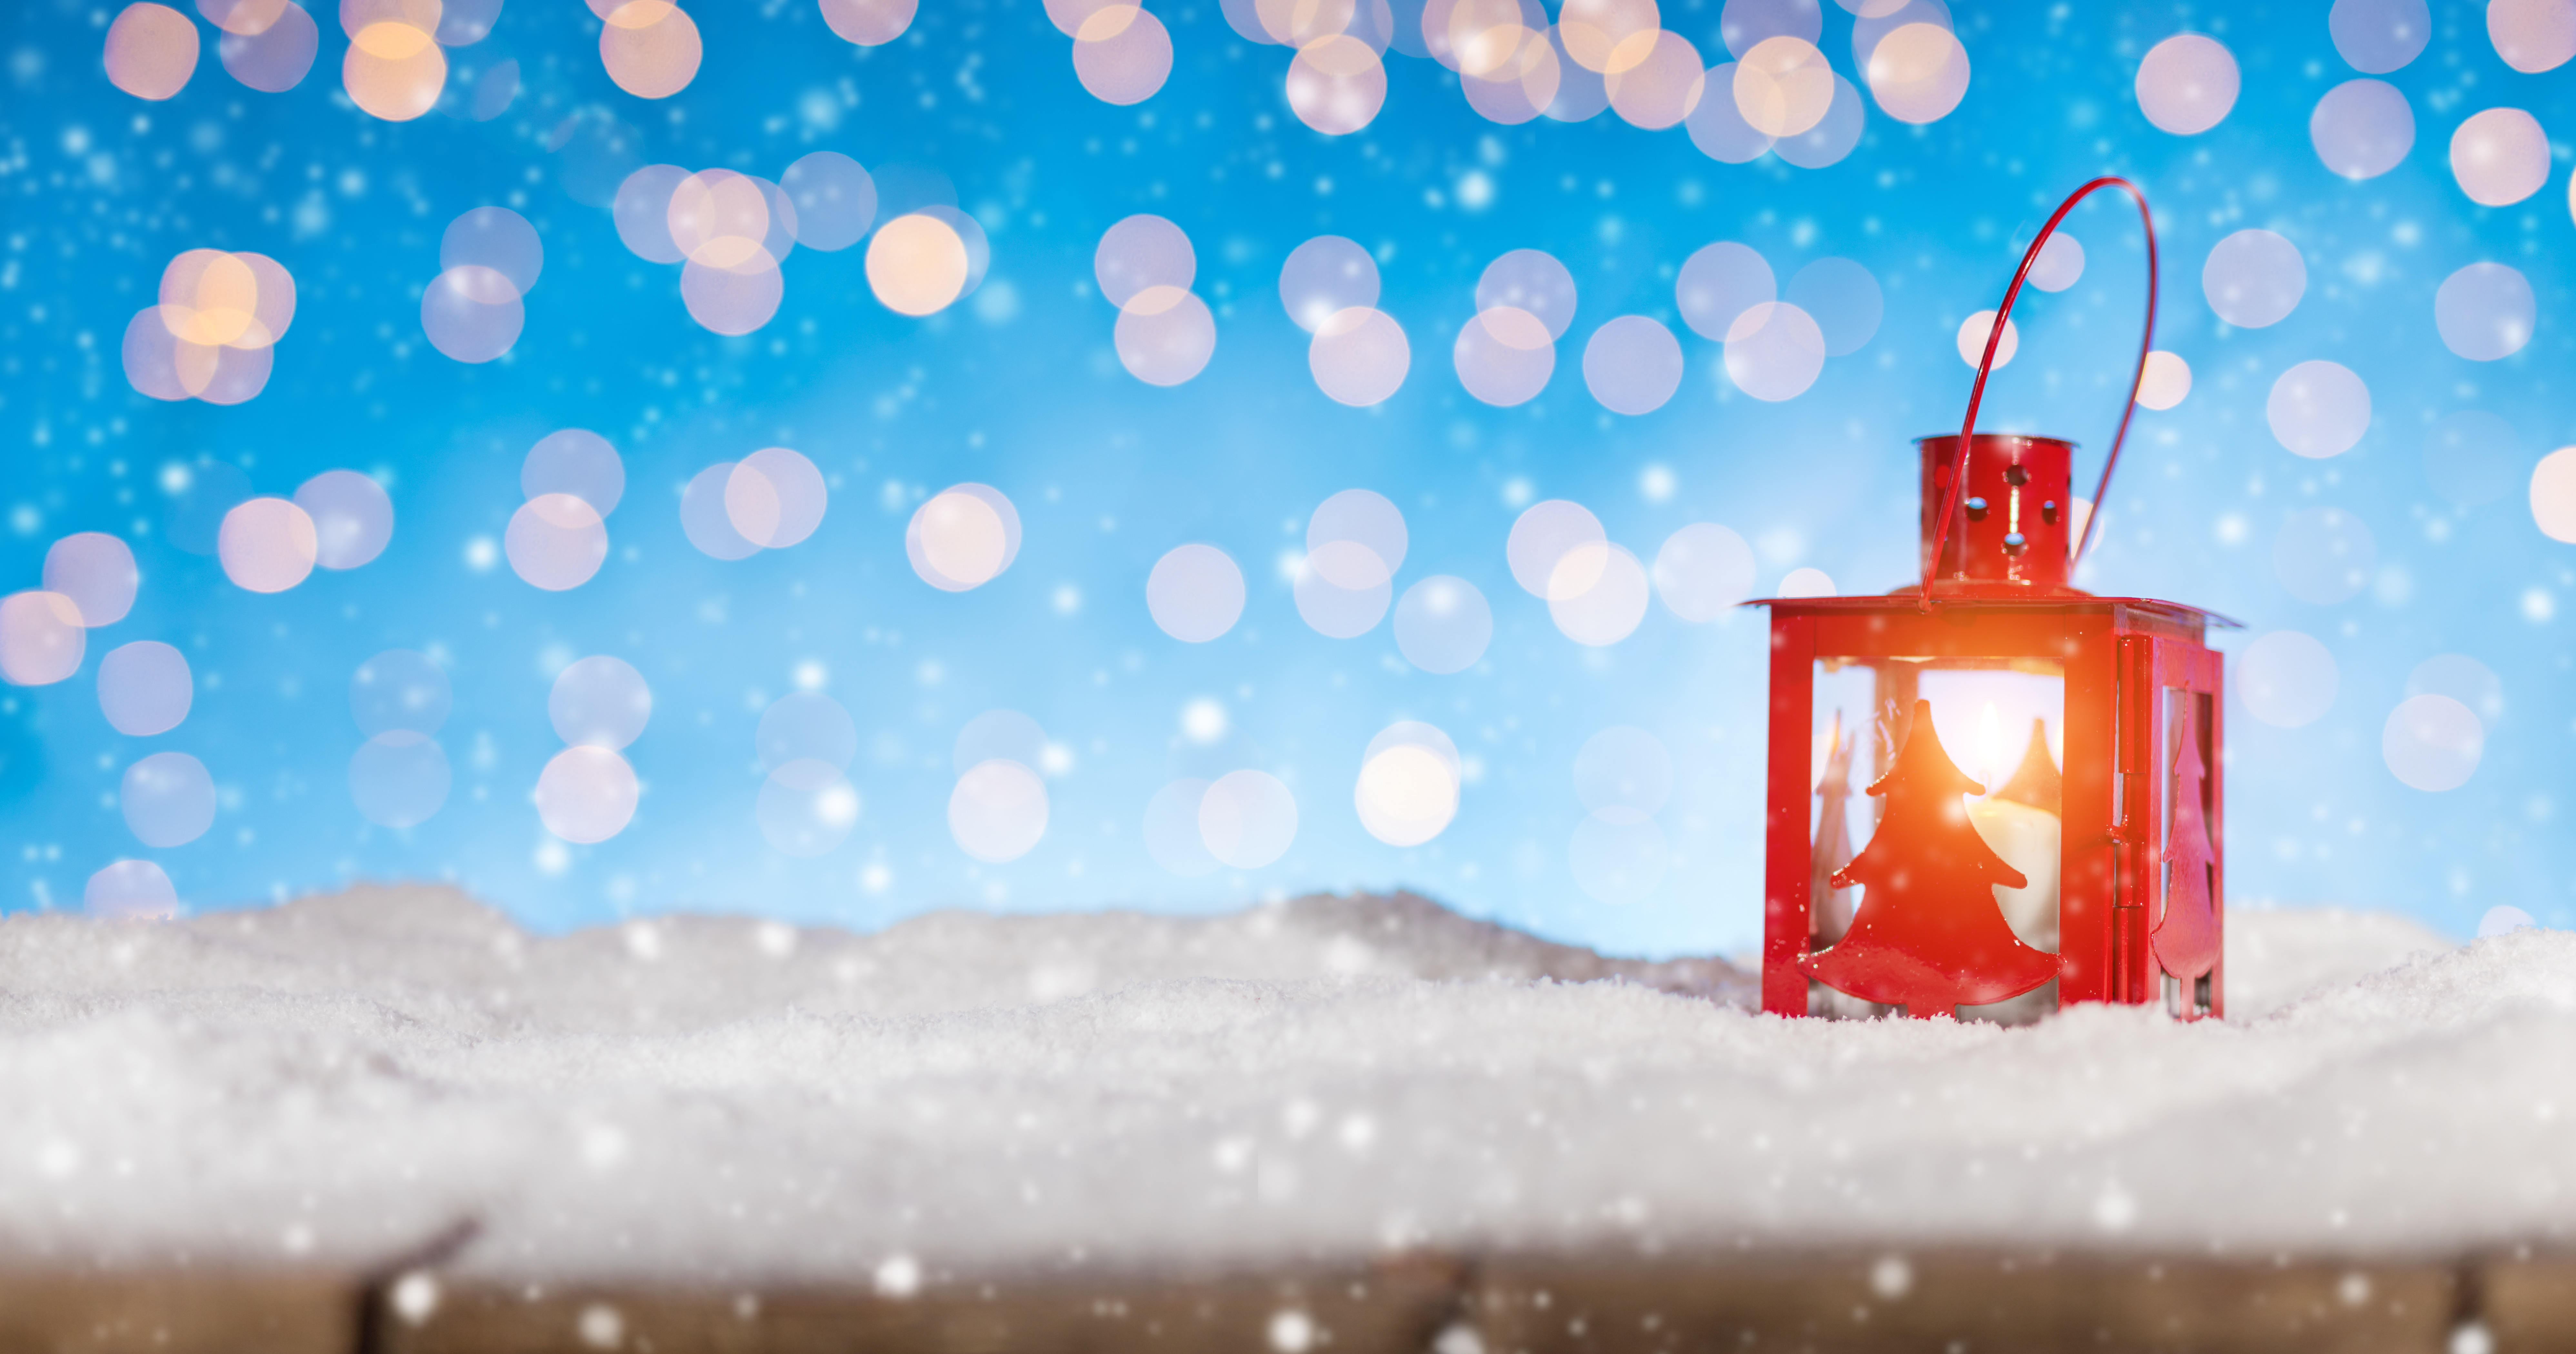 Скачать обои бесплатно Снег, Рождество, Фонарь, Боке, Праздничные картинка на рабочий стол ПК